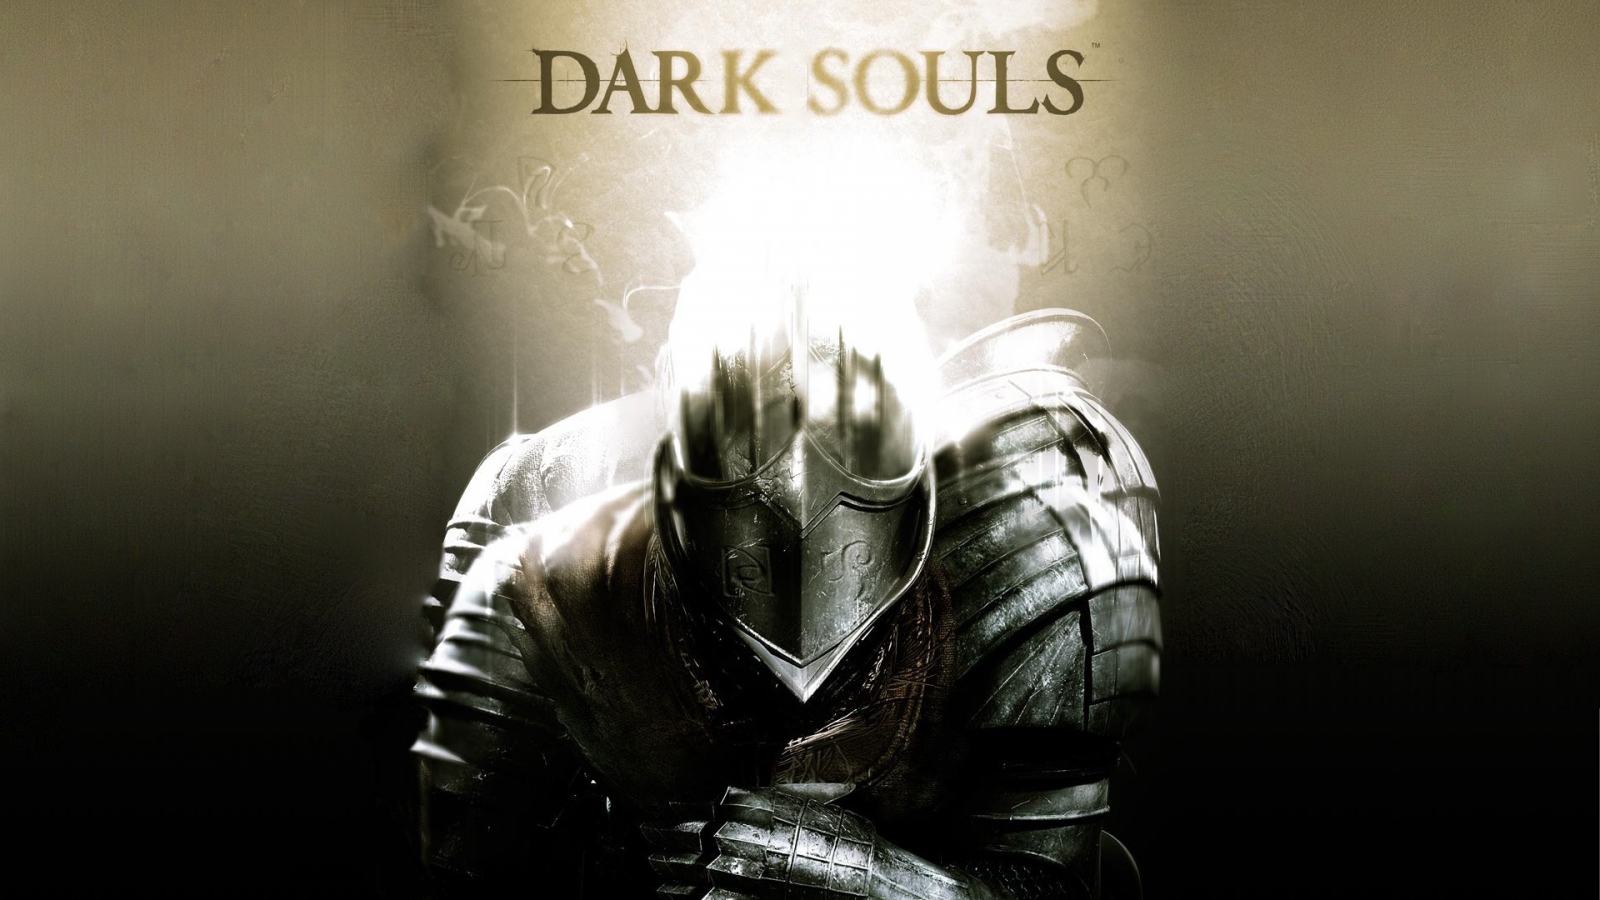 Dark Souls Poster for 1600 x 900 HDTV resolution